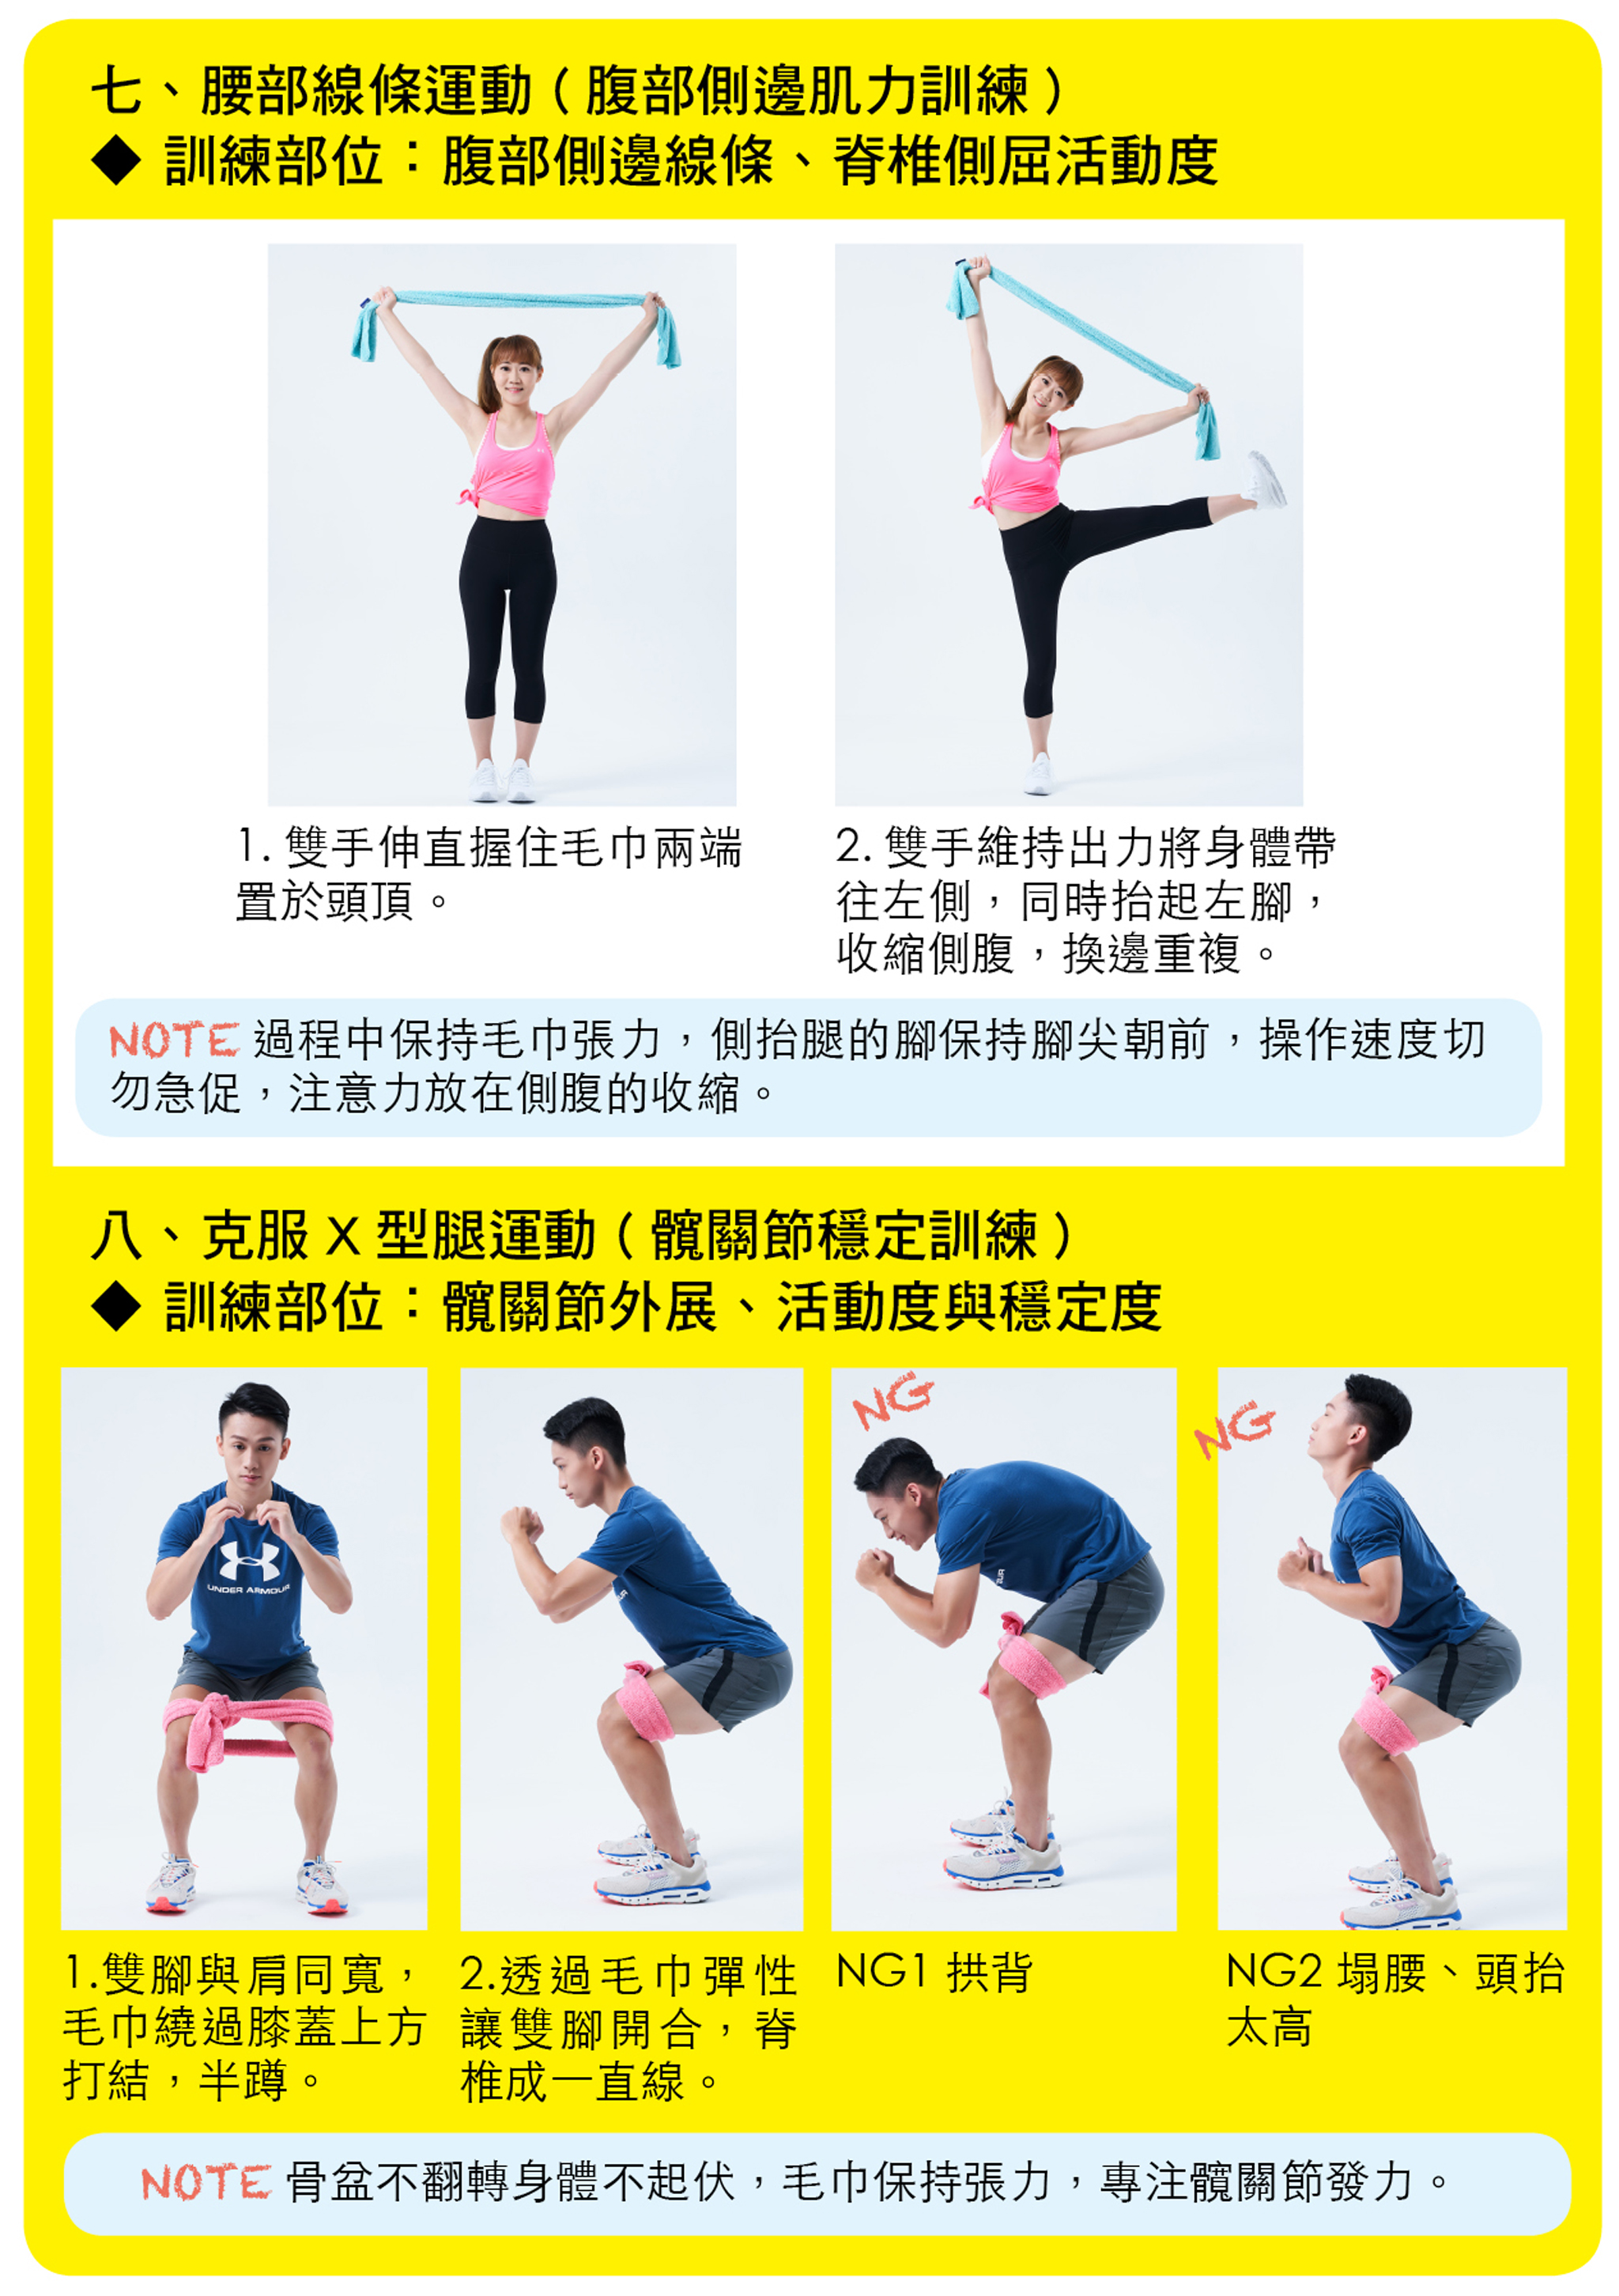 腰部線條運動（腹部側邊肌力訓練）、克服X型腿運動（髖關節穩定訓練）。